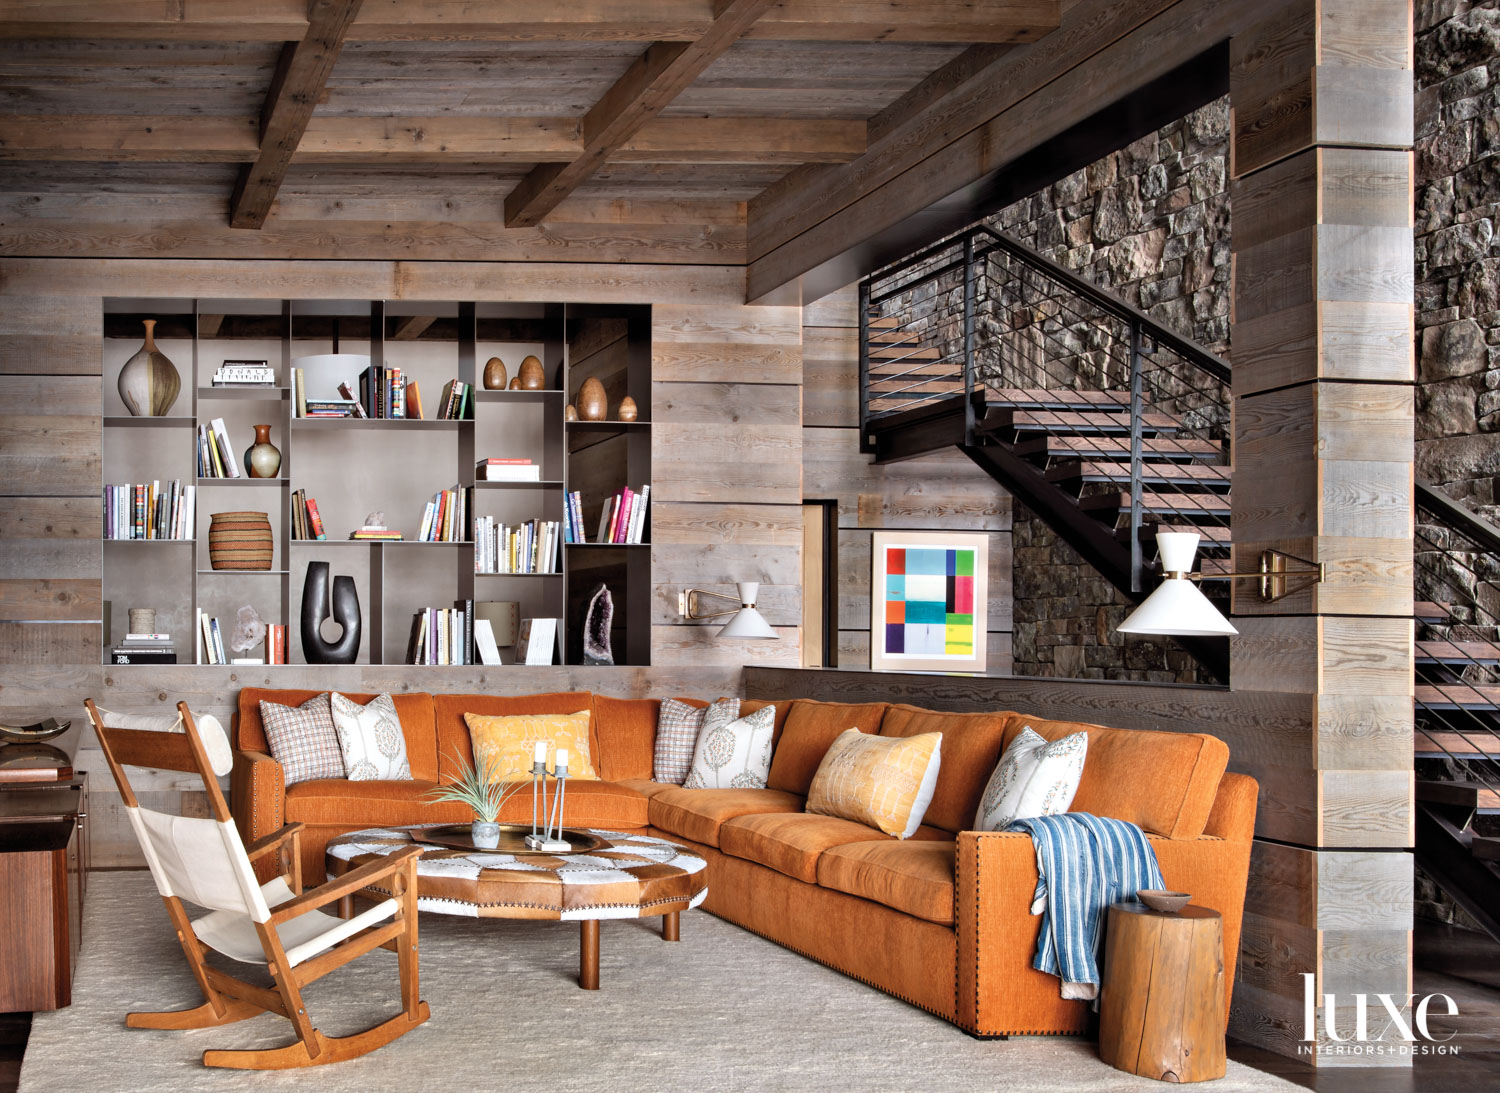 Lounge area with large orange...